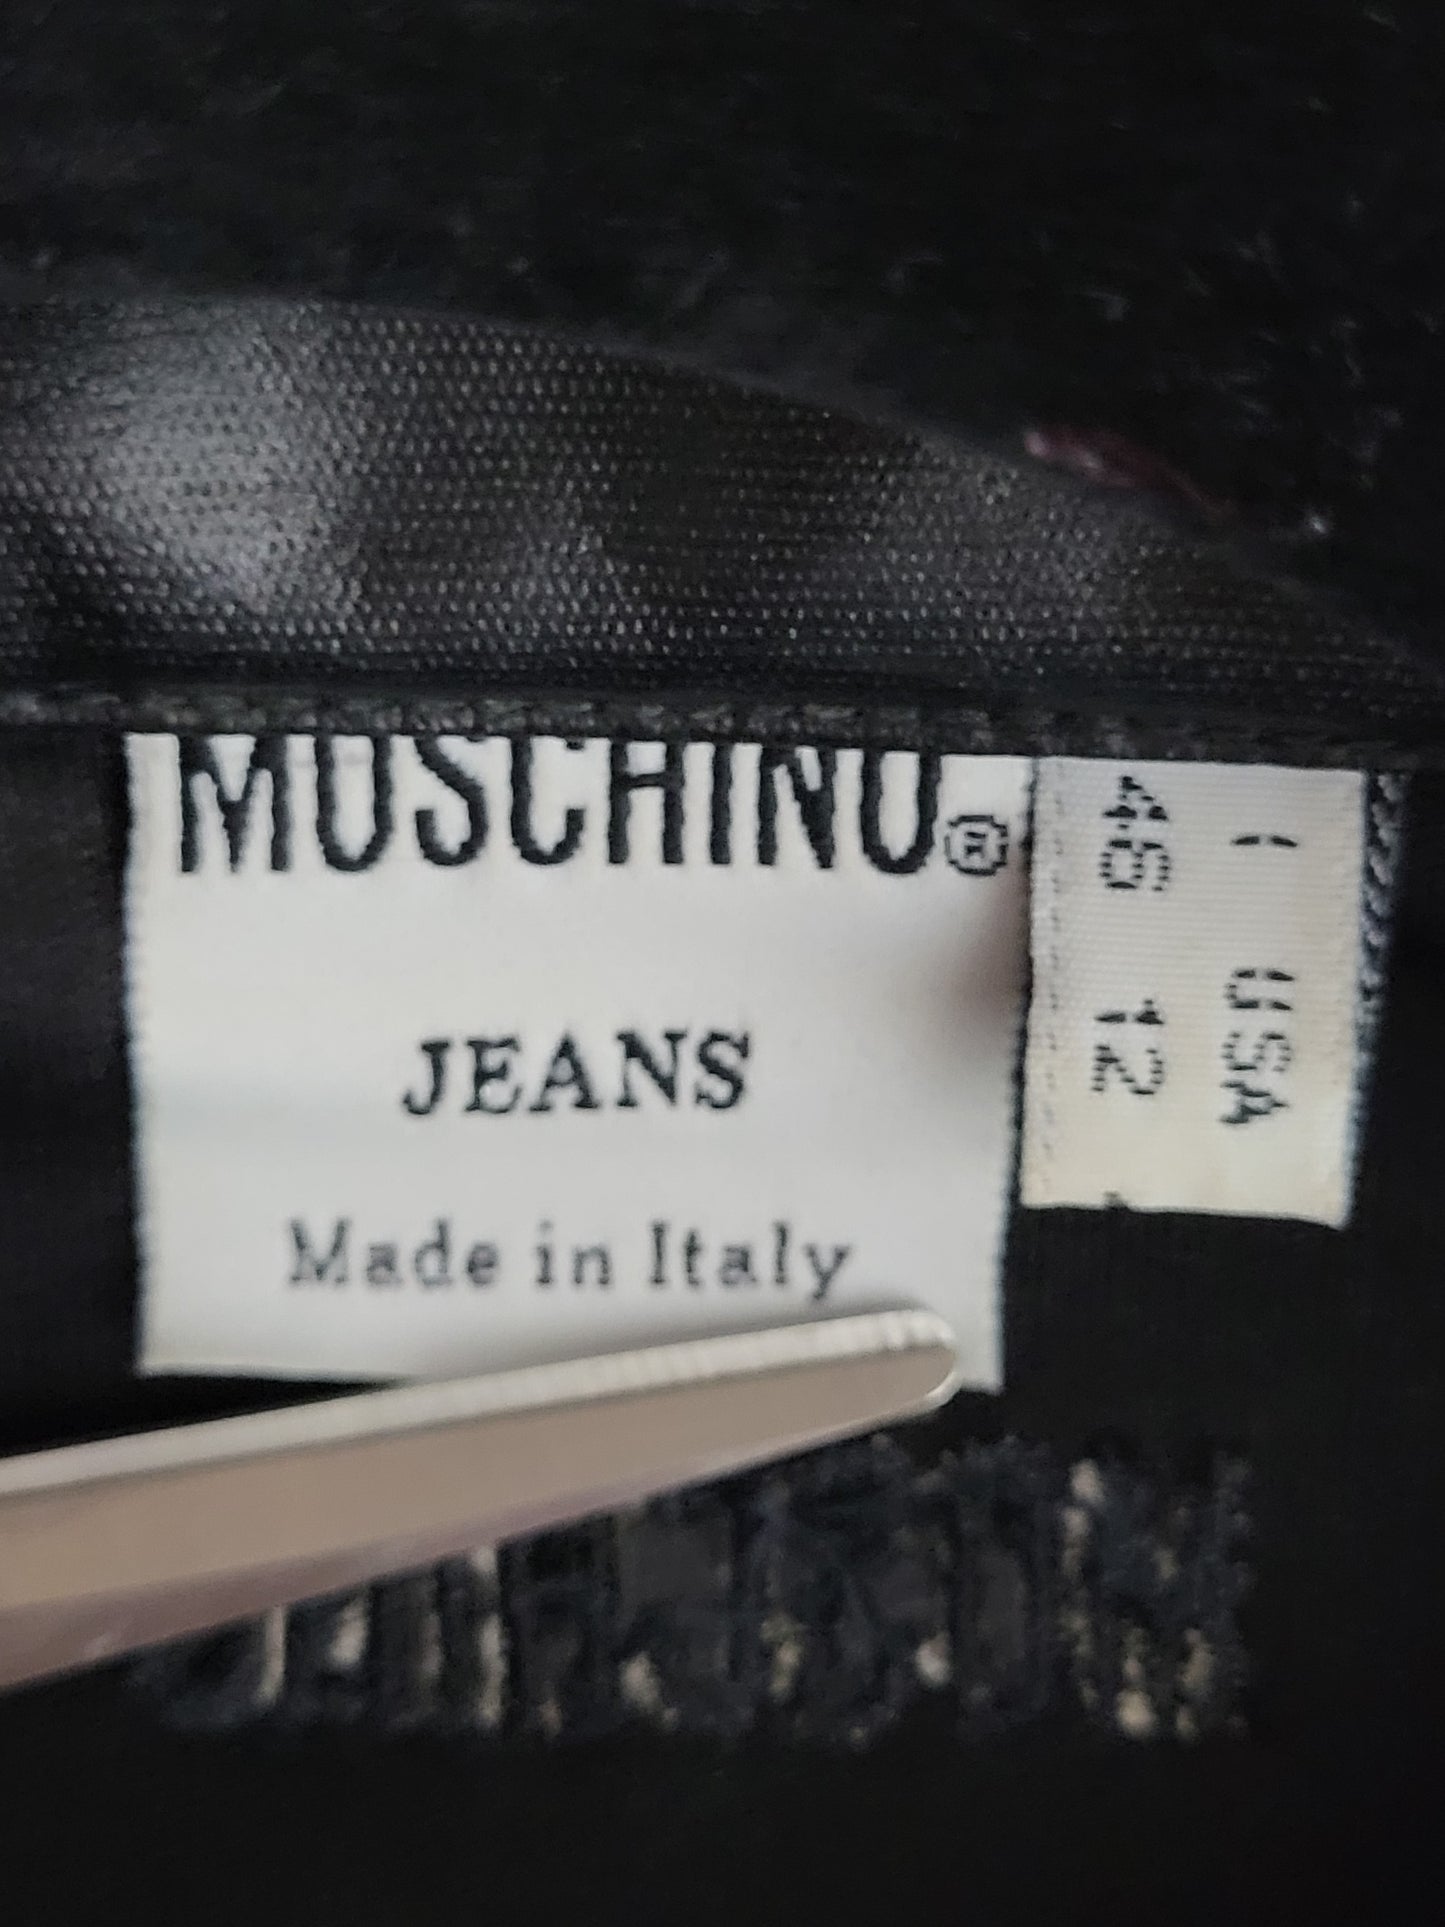 MOSCHINO Jeans -Jacke - Kunstleder/Glanz - Schwarz - Damen - M